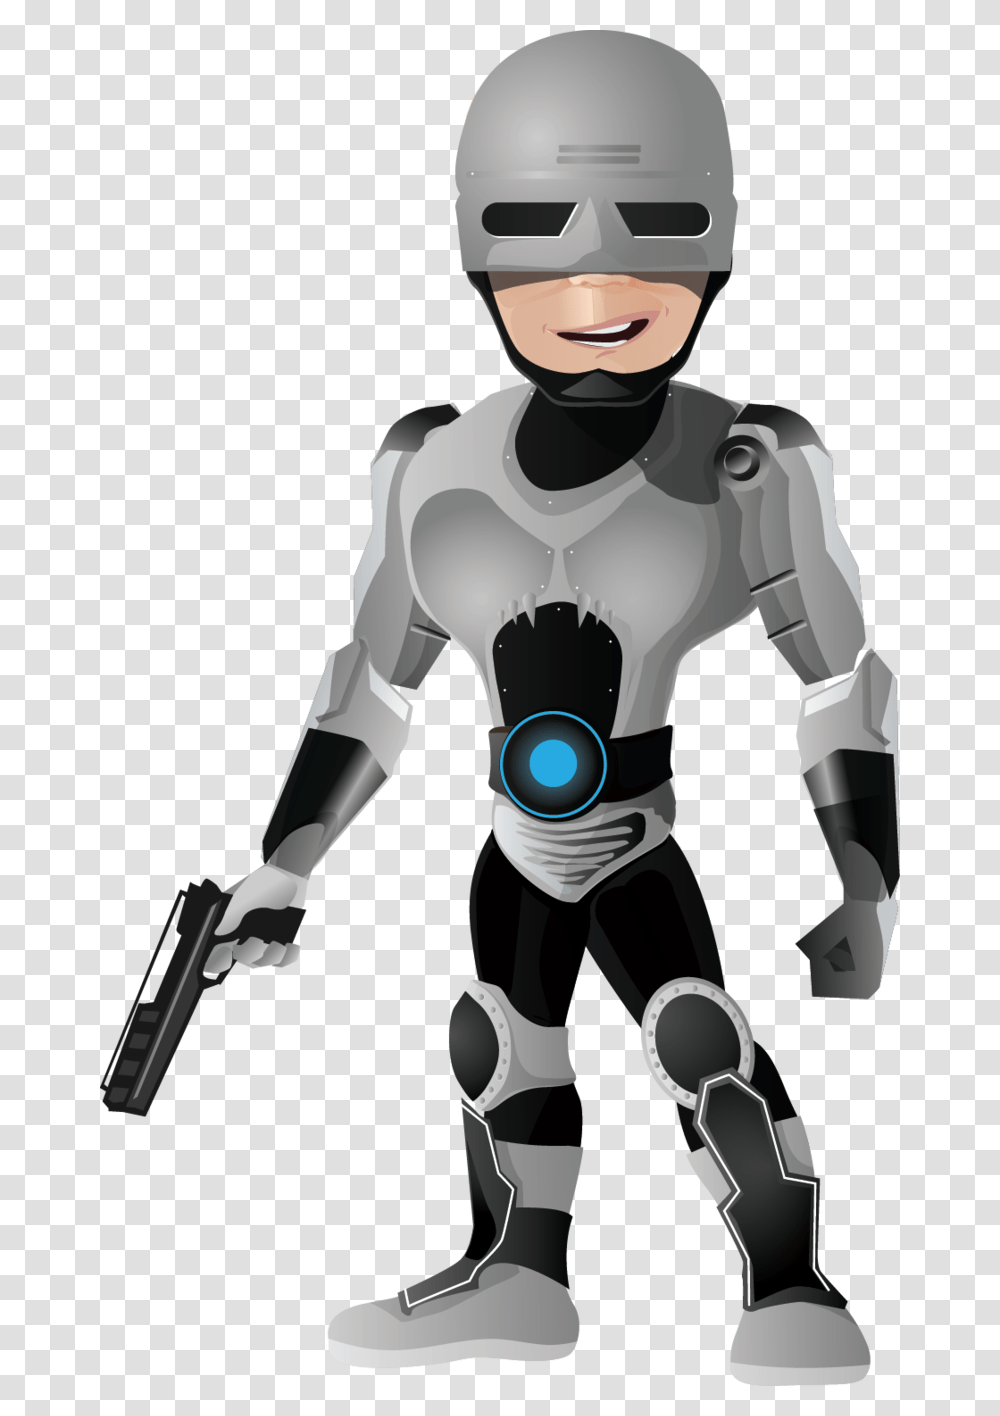 Background Robocop Superhero Vector Character, Toy, Robot, Helmet Transparent Png